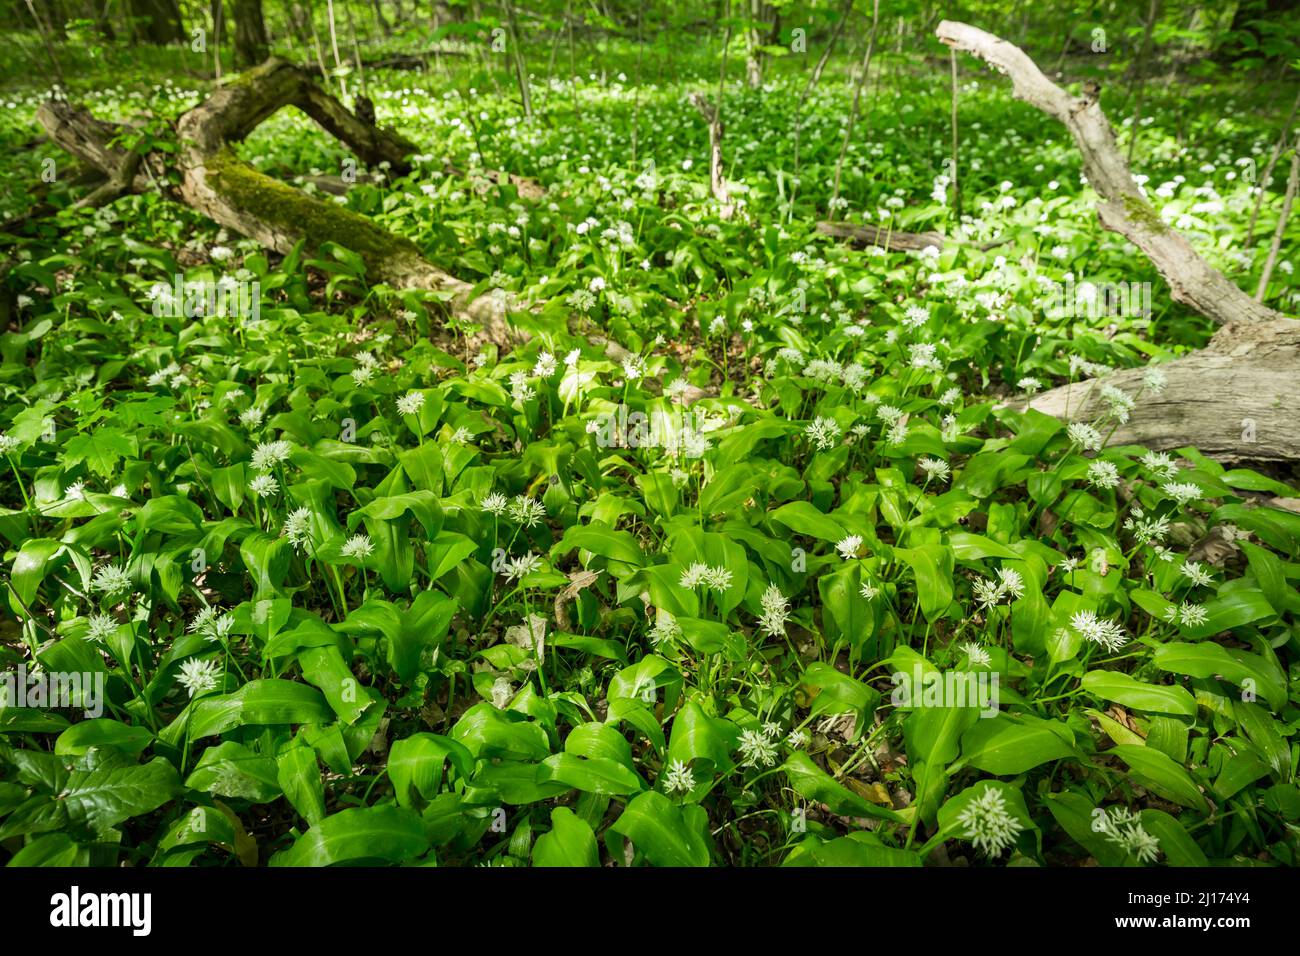 Bosco verde in primavera, la terra è coperta di aglio selvatico (ramson) Foto Stock